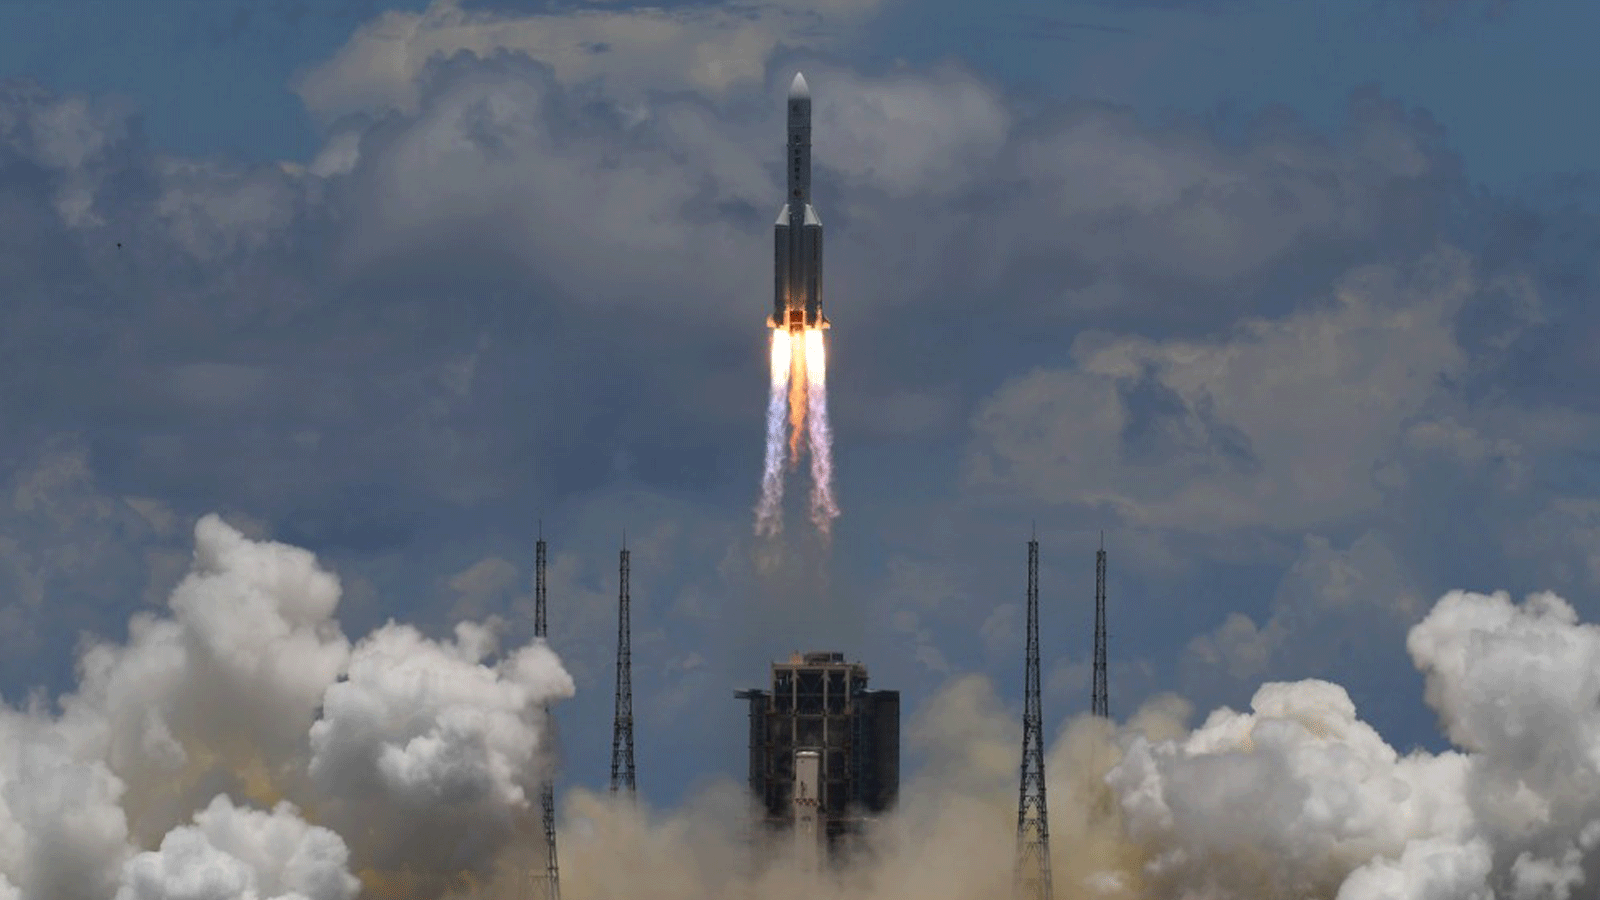 صاروخ لونغ مارش 5، يحمل مركبة مدارية ومركبة هبوط وجوالة متجهة إلى المريخ، ينطلق من موقع إطلاق مركبة الفضاء وينتشانغ في مقاطعة هاينان، الصين. في 23 تموز/يوليو 2020